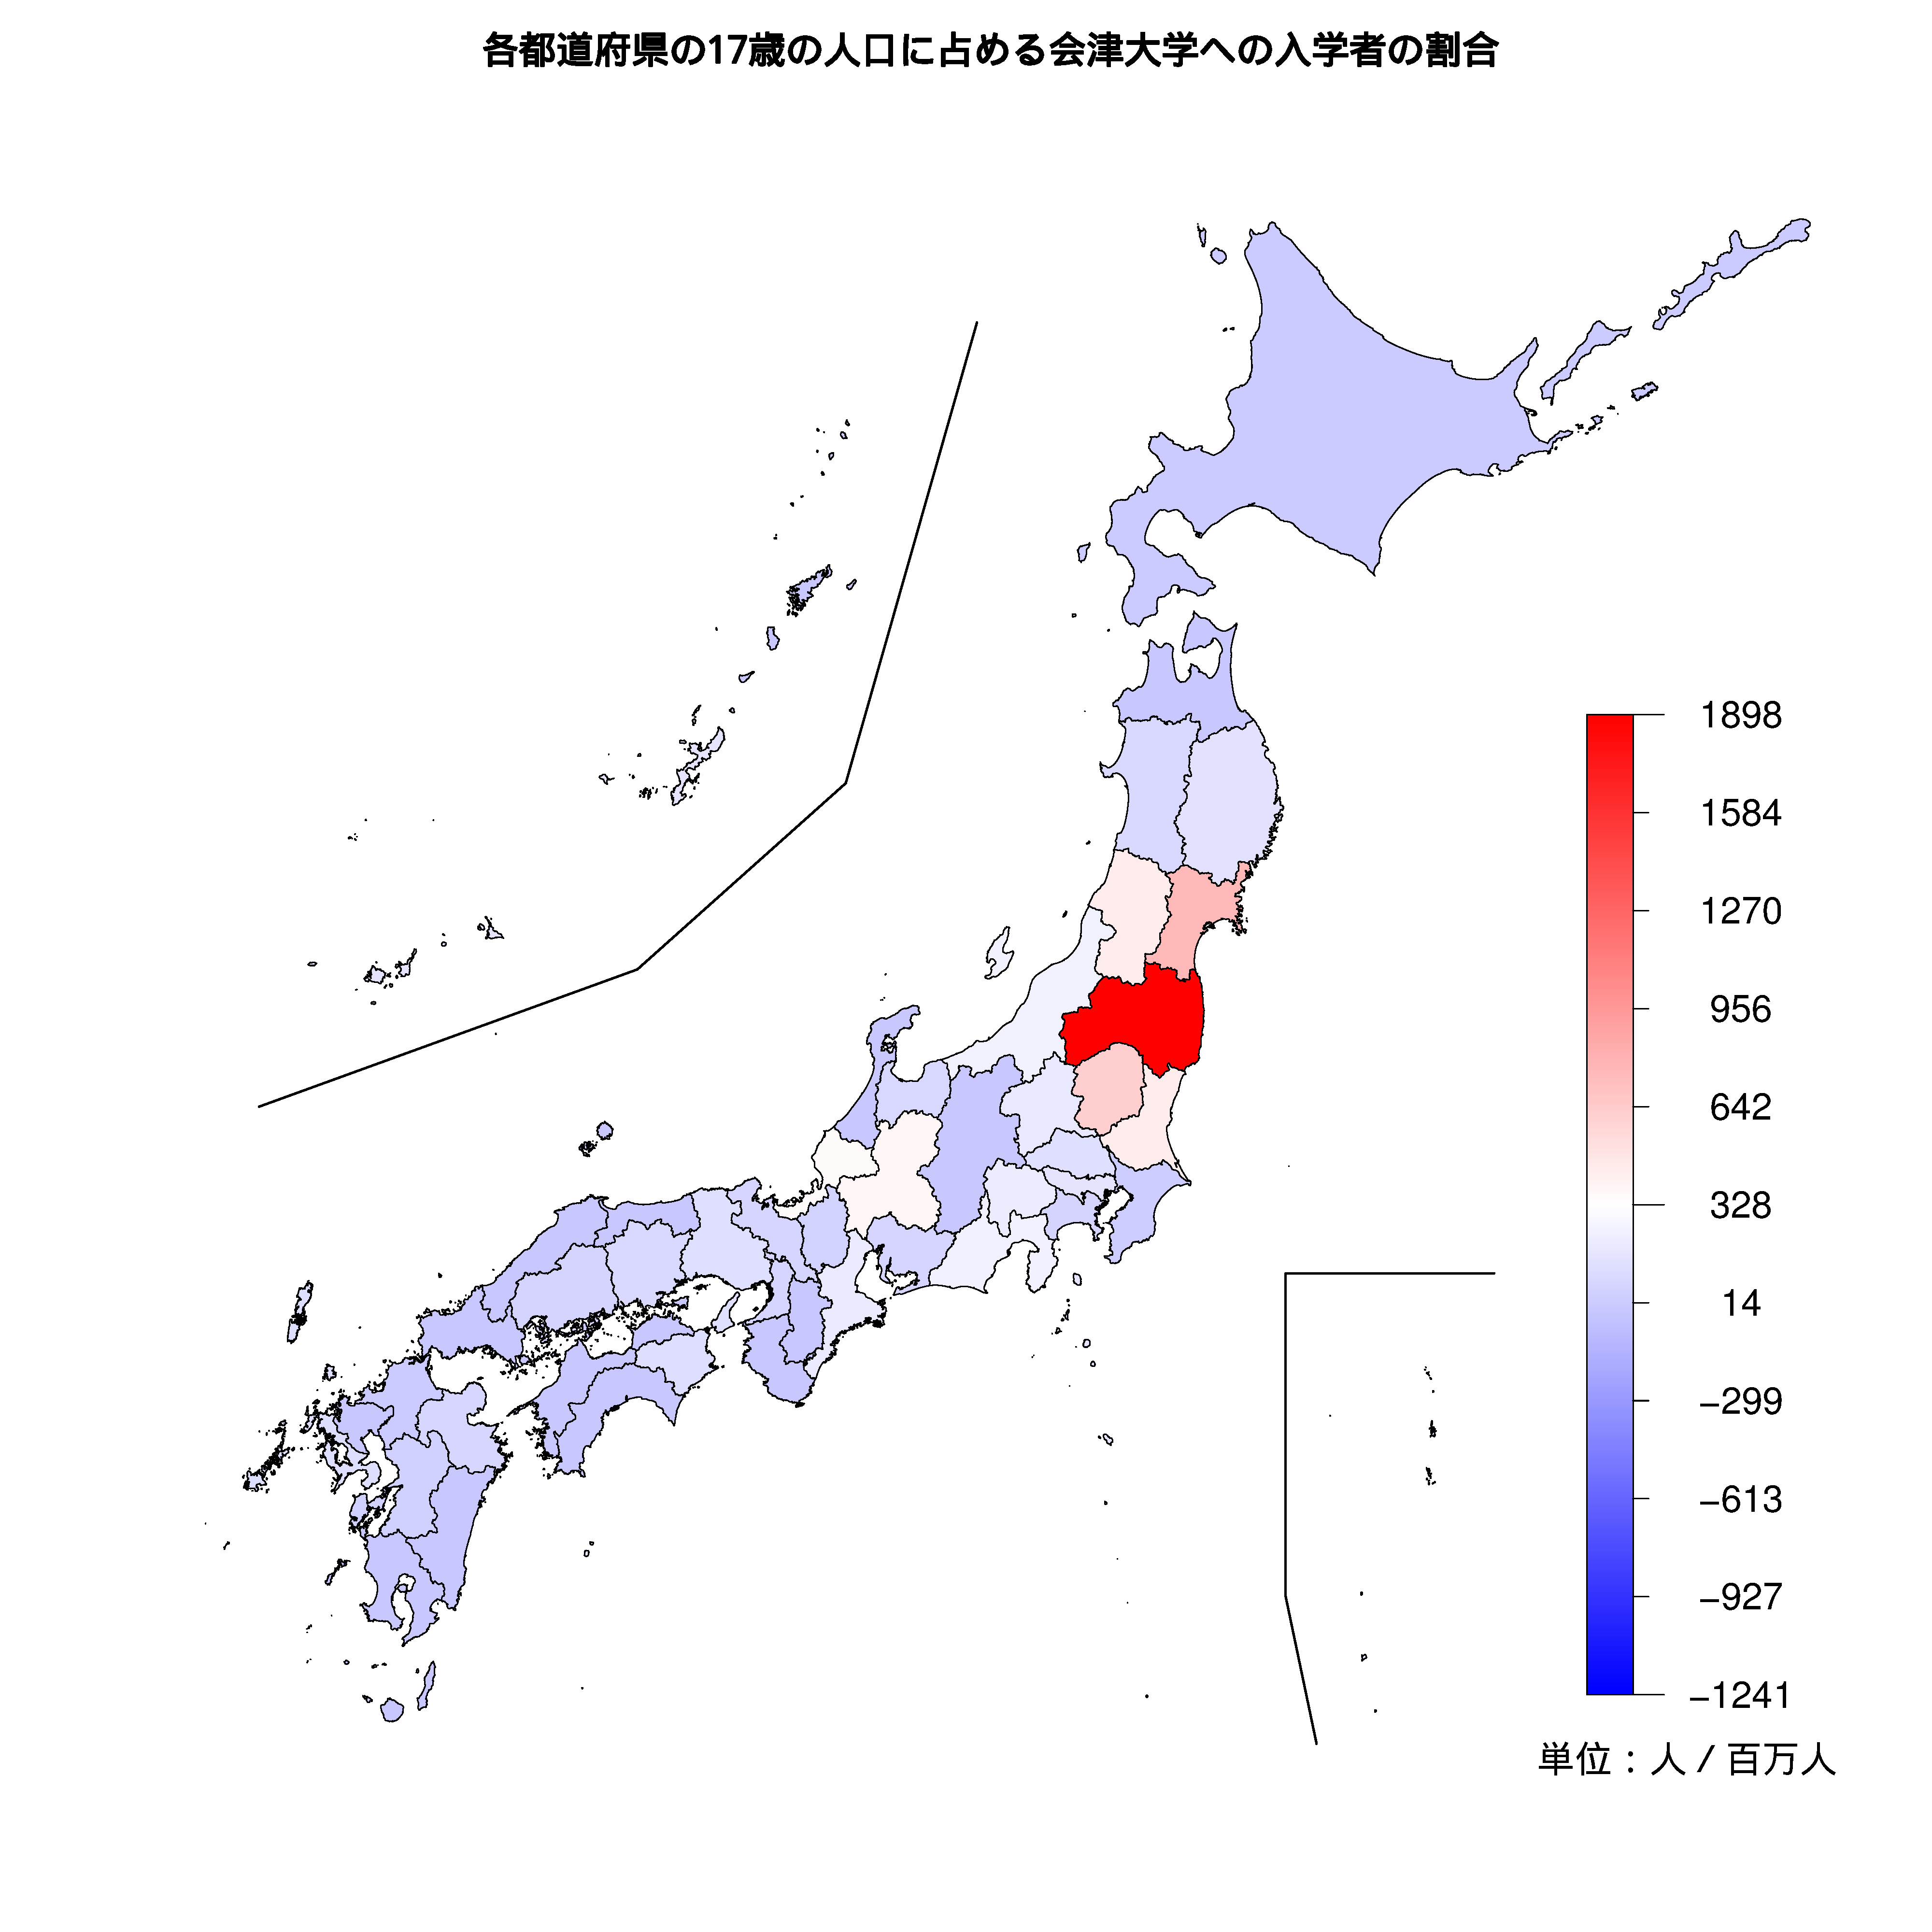 会津大学への入学者が多い都道府県の色分け地図